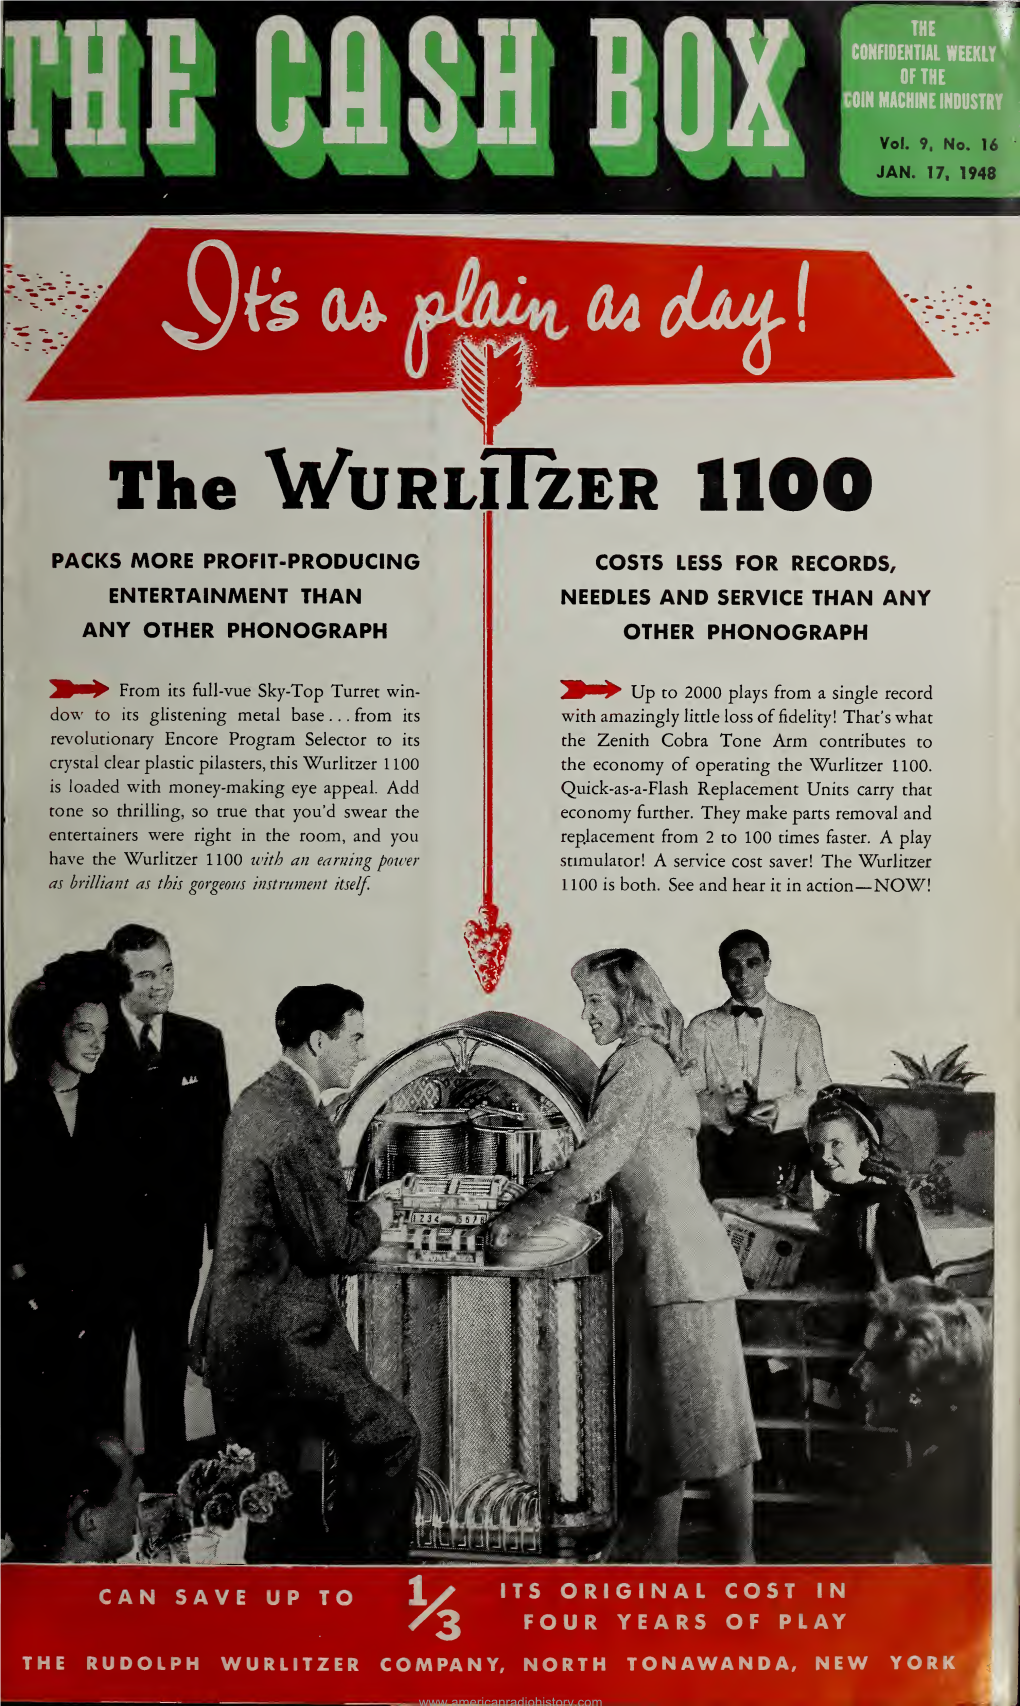 The Wurllizer 1100